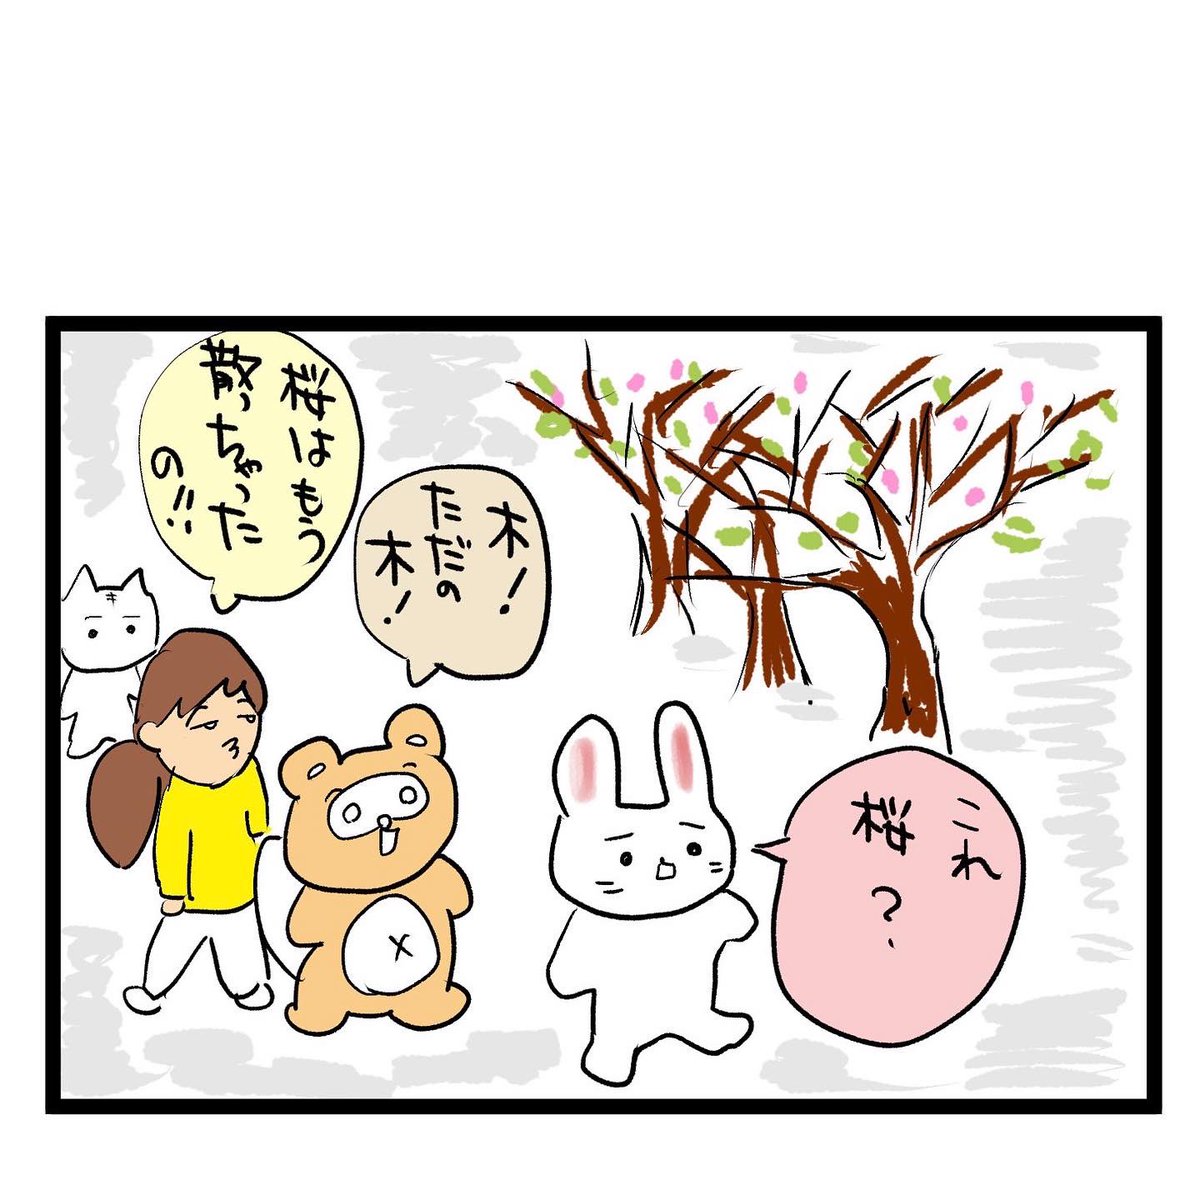 #四コマ漫画
#桜
桜散る 